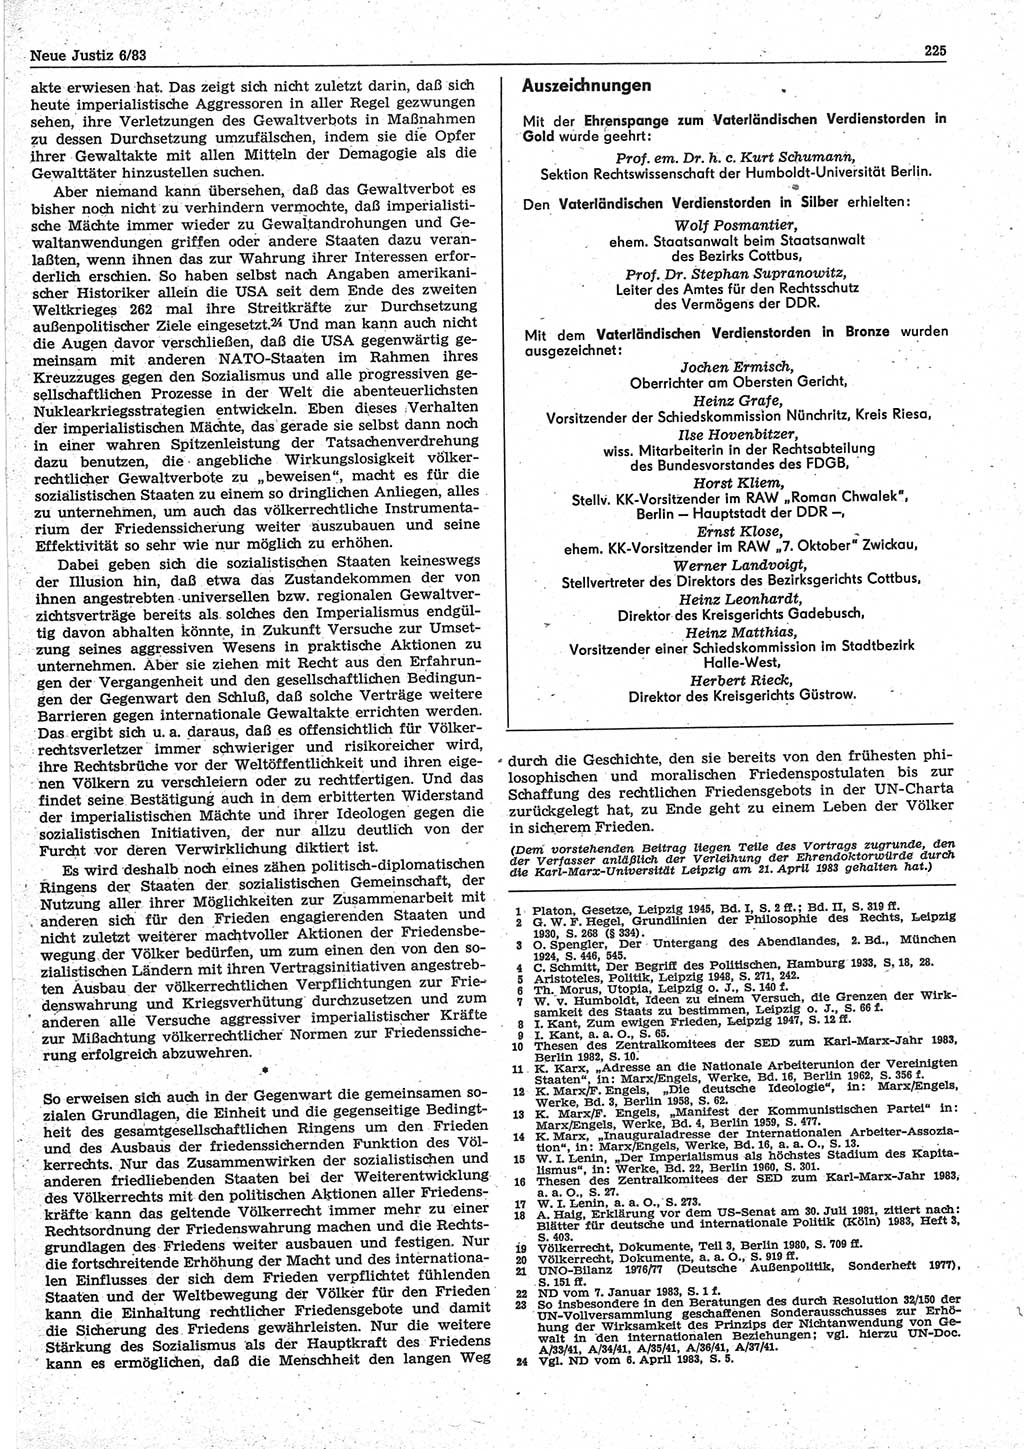 Neue Justiz (NJ), Zeitschrift für sozialistisches Recht und Gesetzlichkeit [Deutsche Demokratische Republik (DDR)], 37. Jahrgang 1983, Seite 225 (NJ DDR 1983, S. 225)